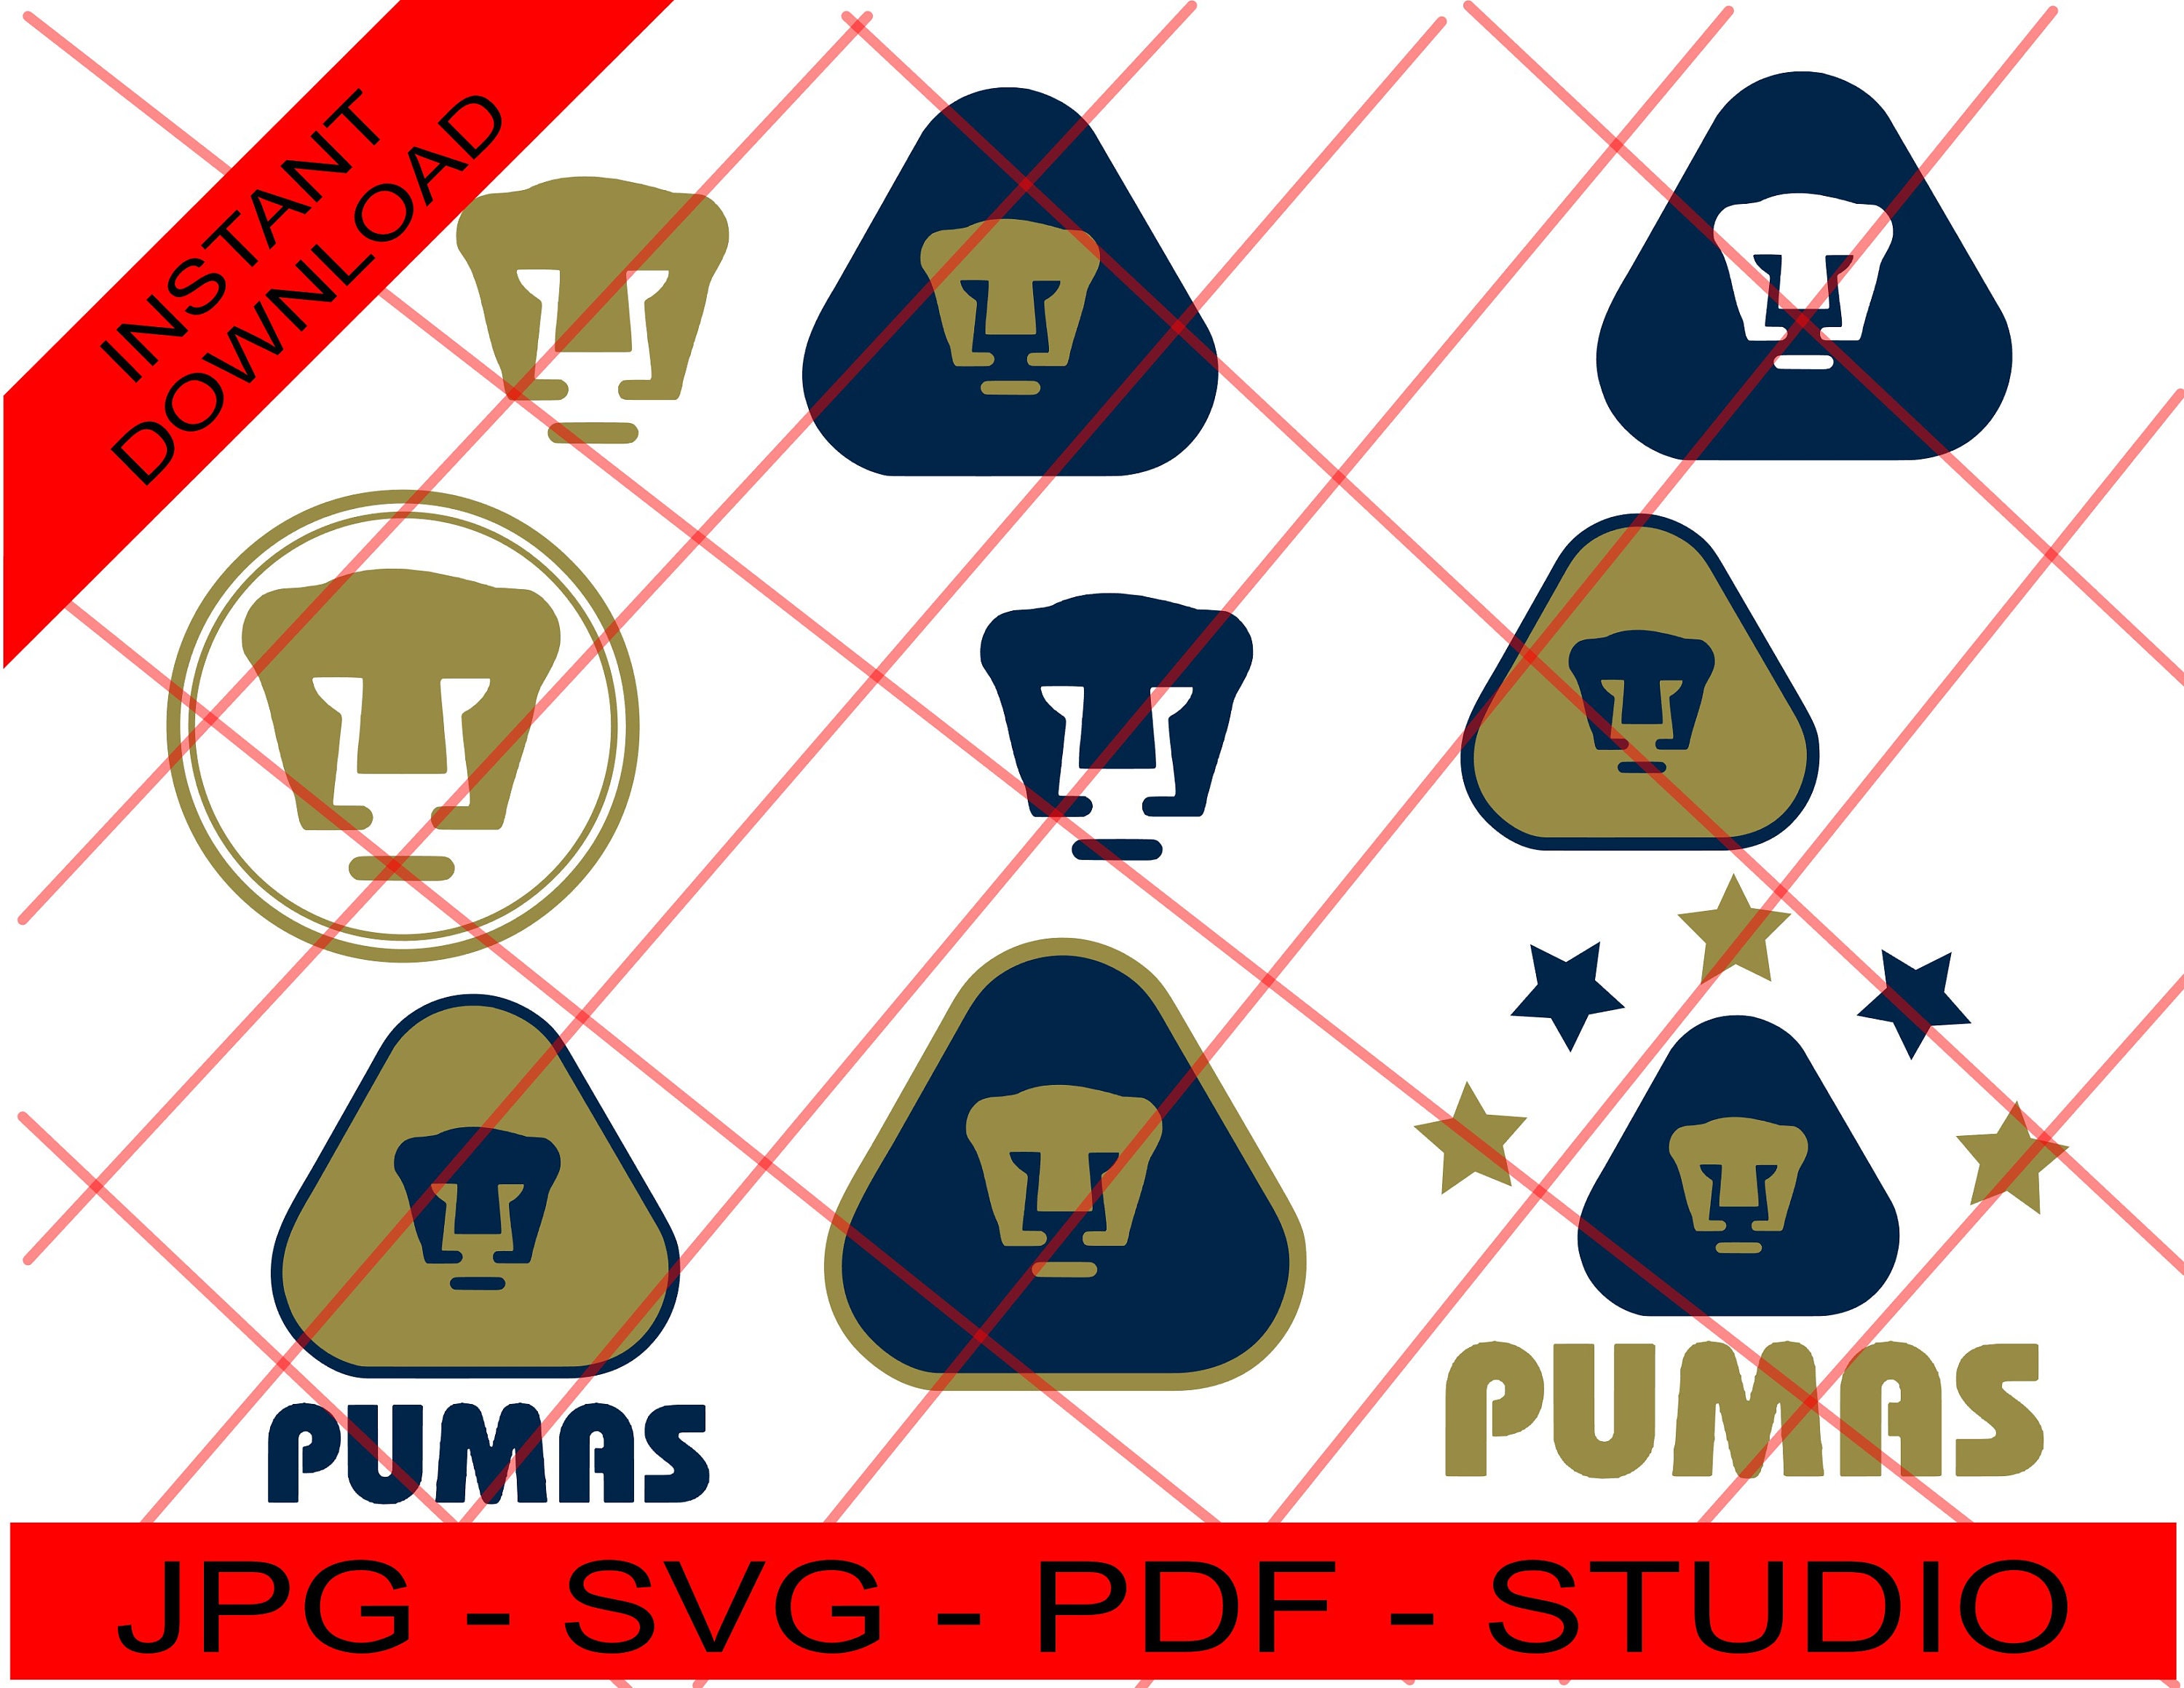 Pumas Team